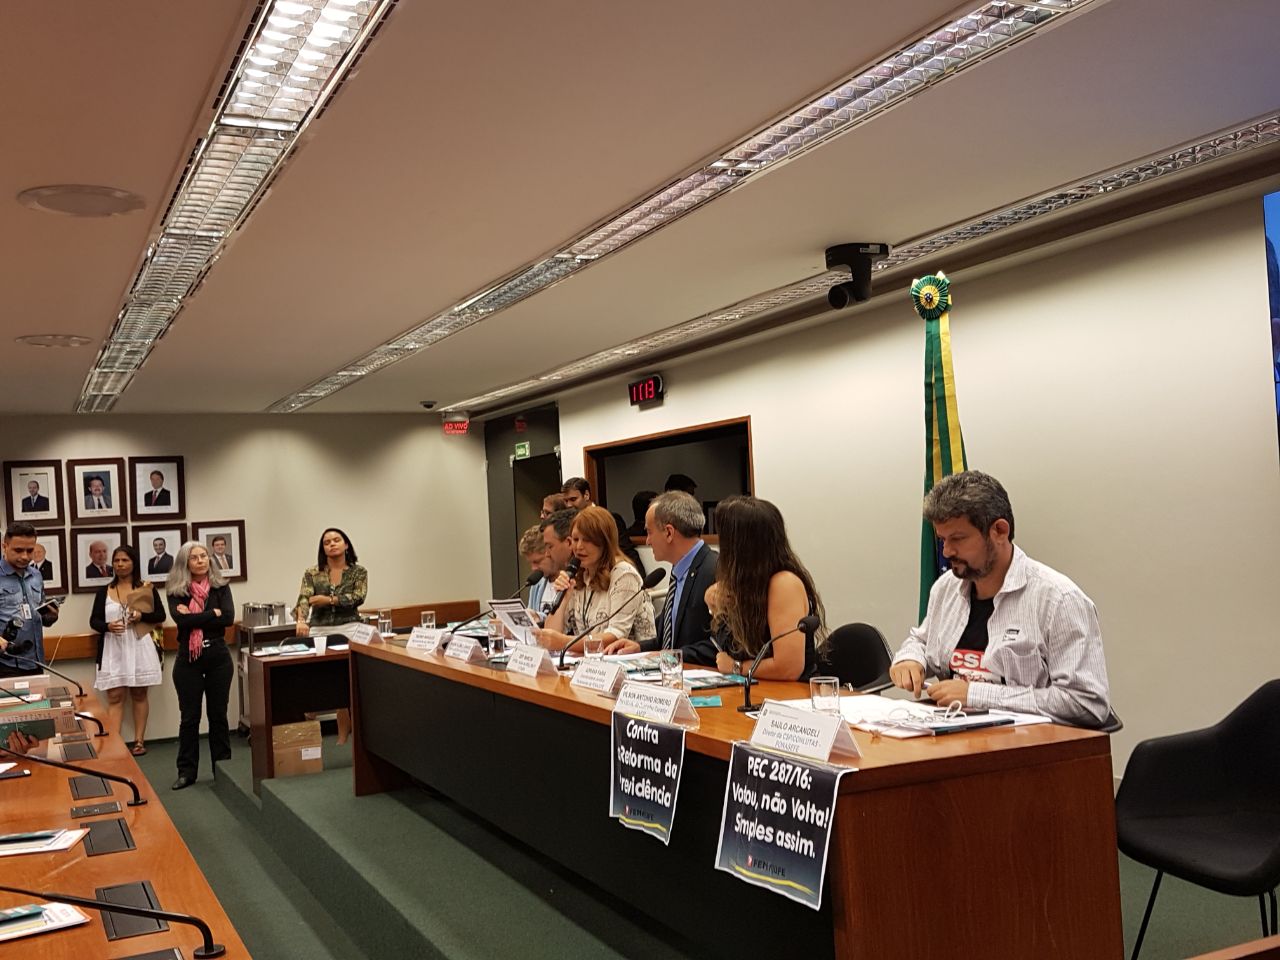 CARAVANA DO SISEJUFE PRESSIONA deputados a votarem contra a antirreforma da Previdência, SISEJUFE